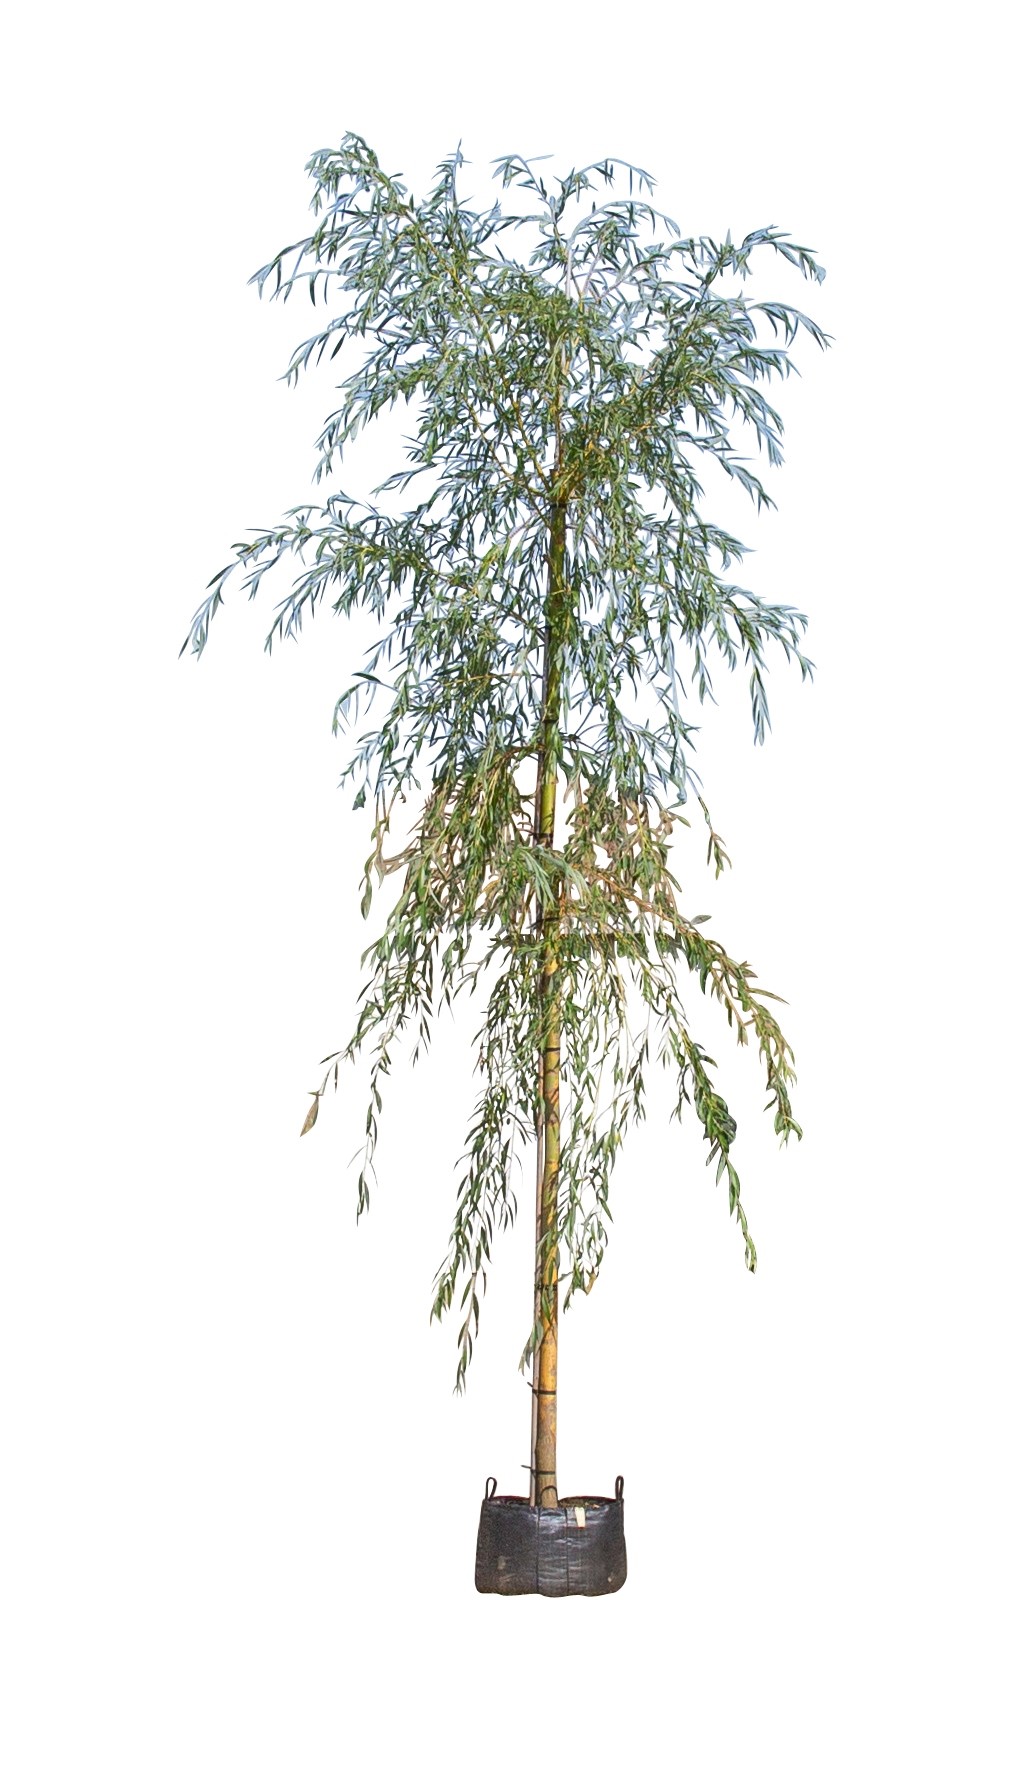 treurwilg Salix sepulcralis Chrysocoma h 425 cm st. omtrek 22,5 cm st. h 230 cm - Warentuin Natuurlijk